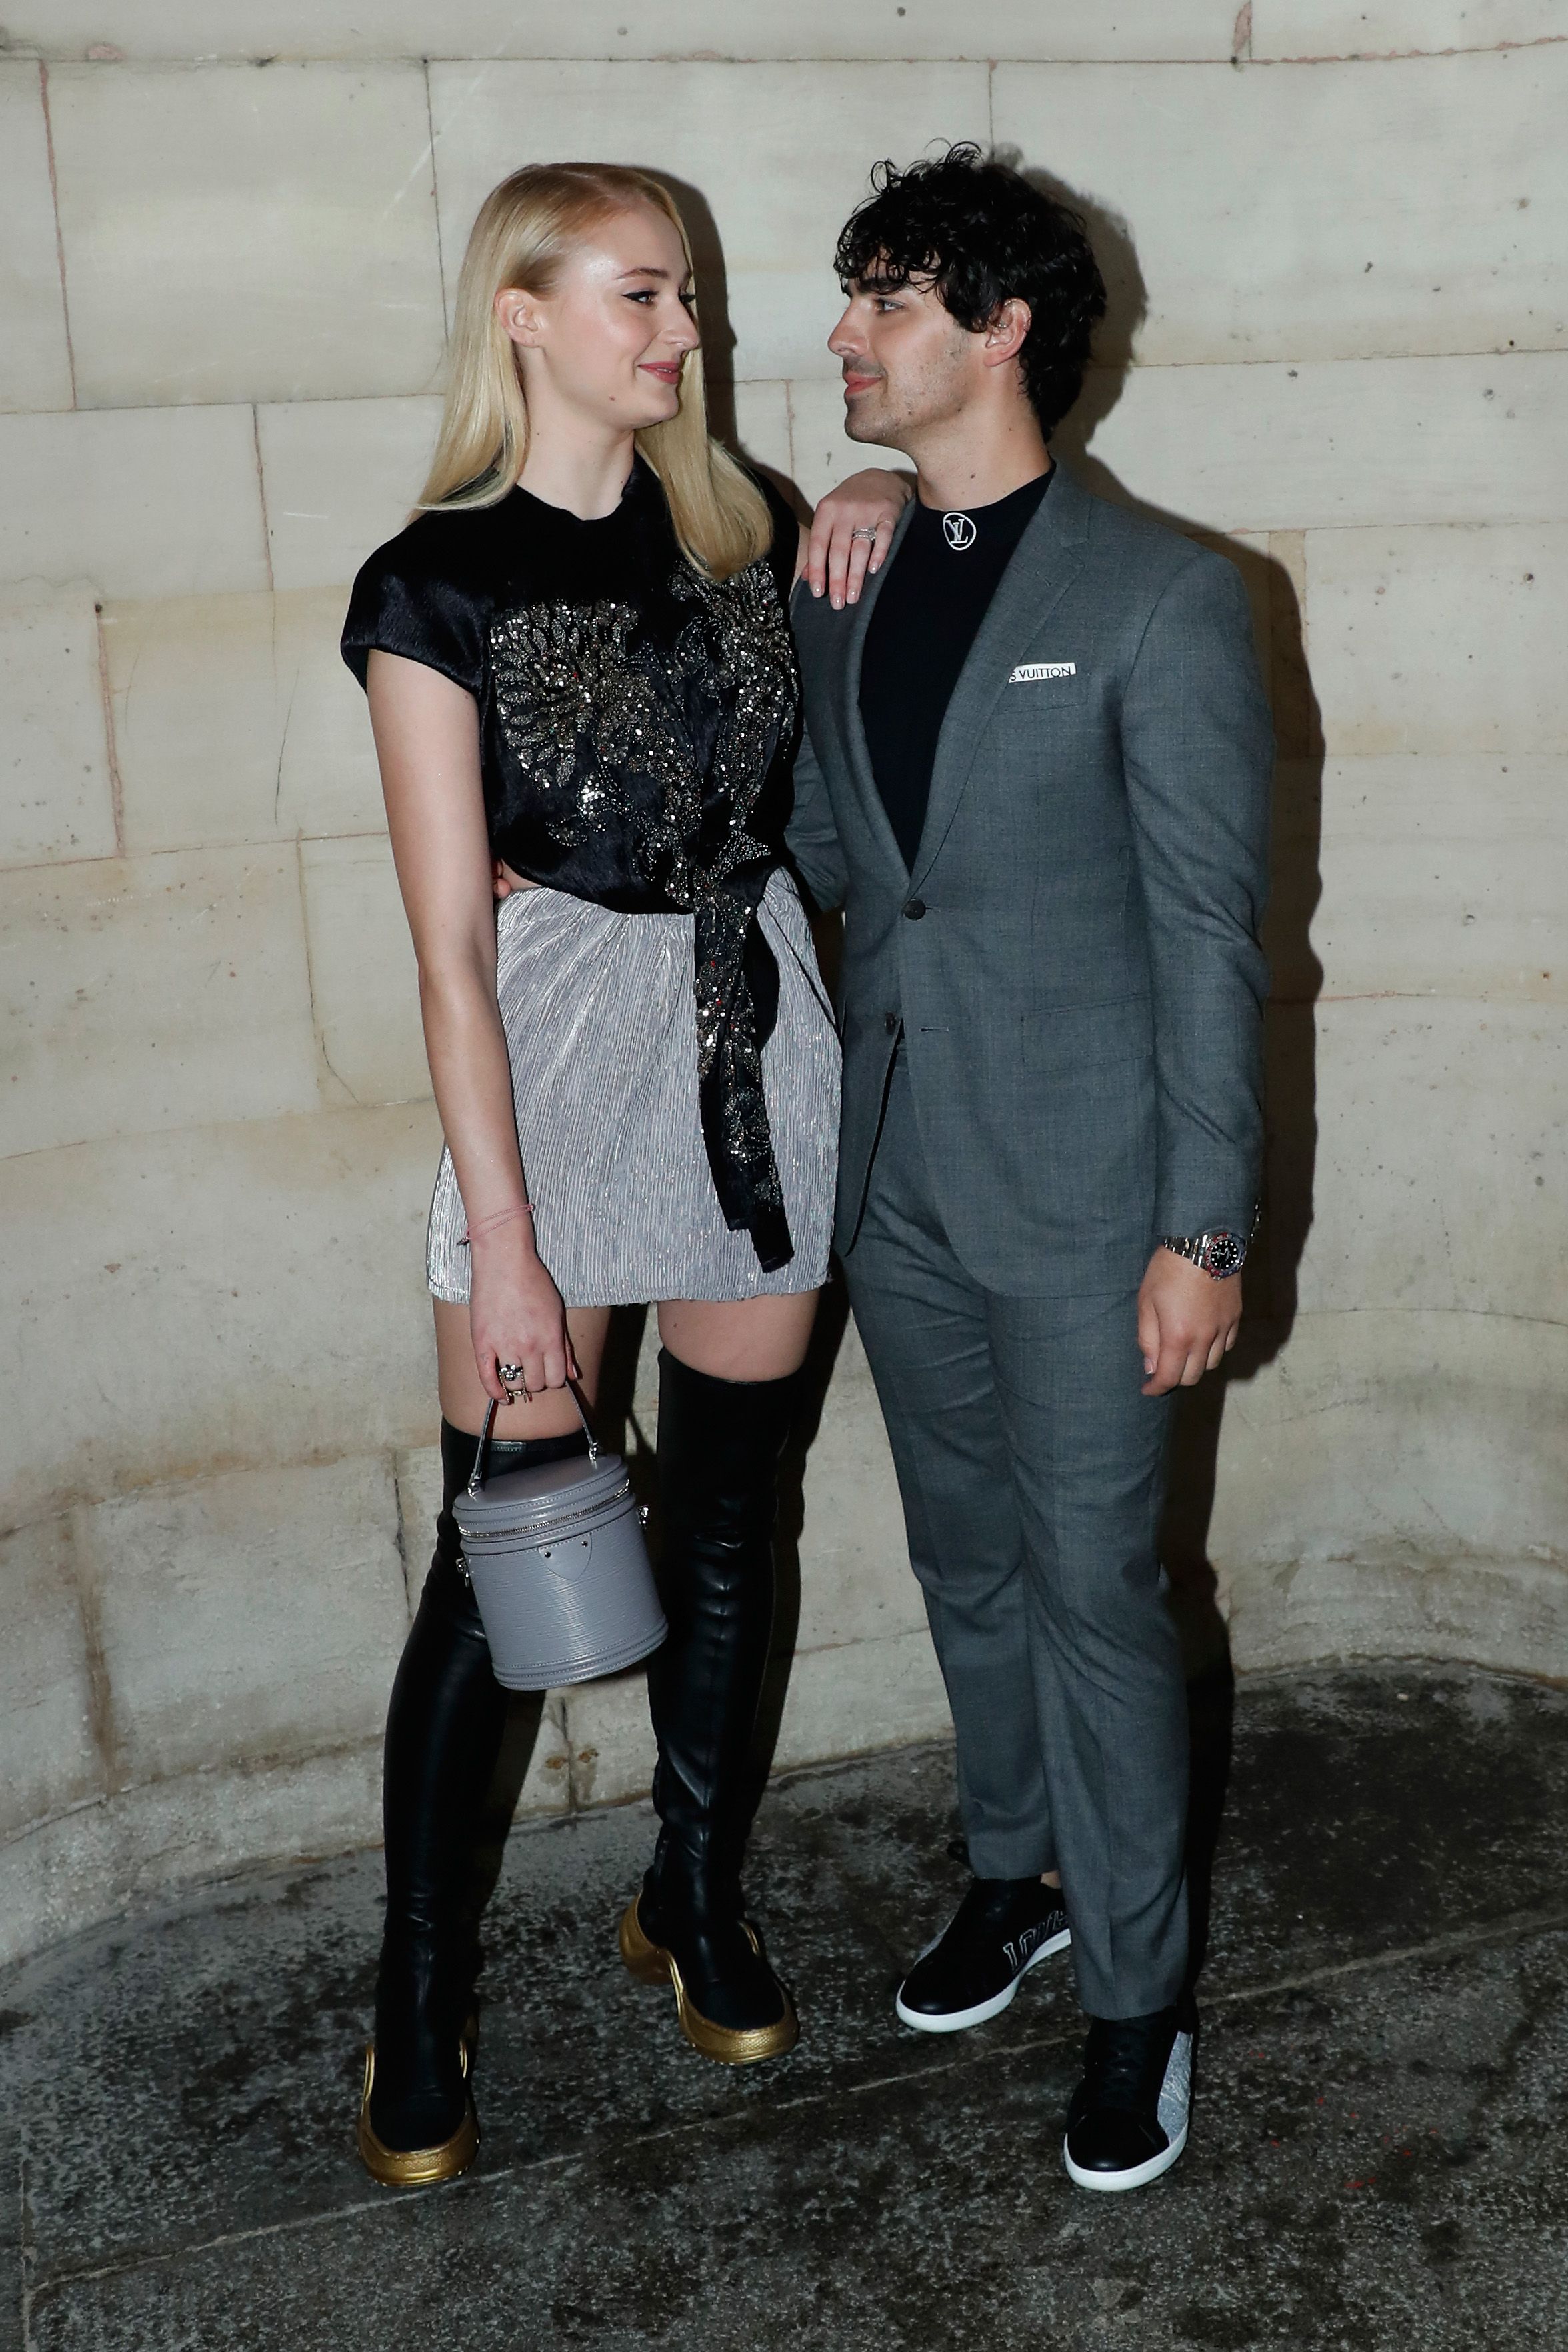 Sophie Turner and Joe Jonas at Louis Vuitton Dinner in Paris